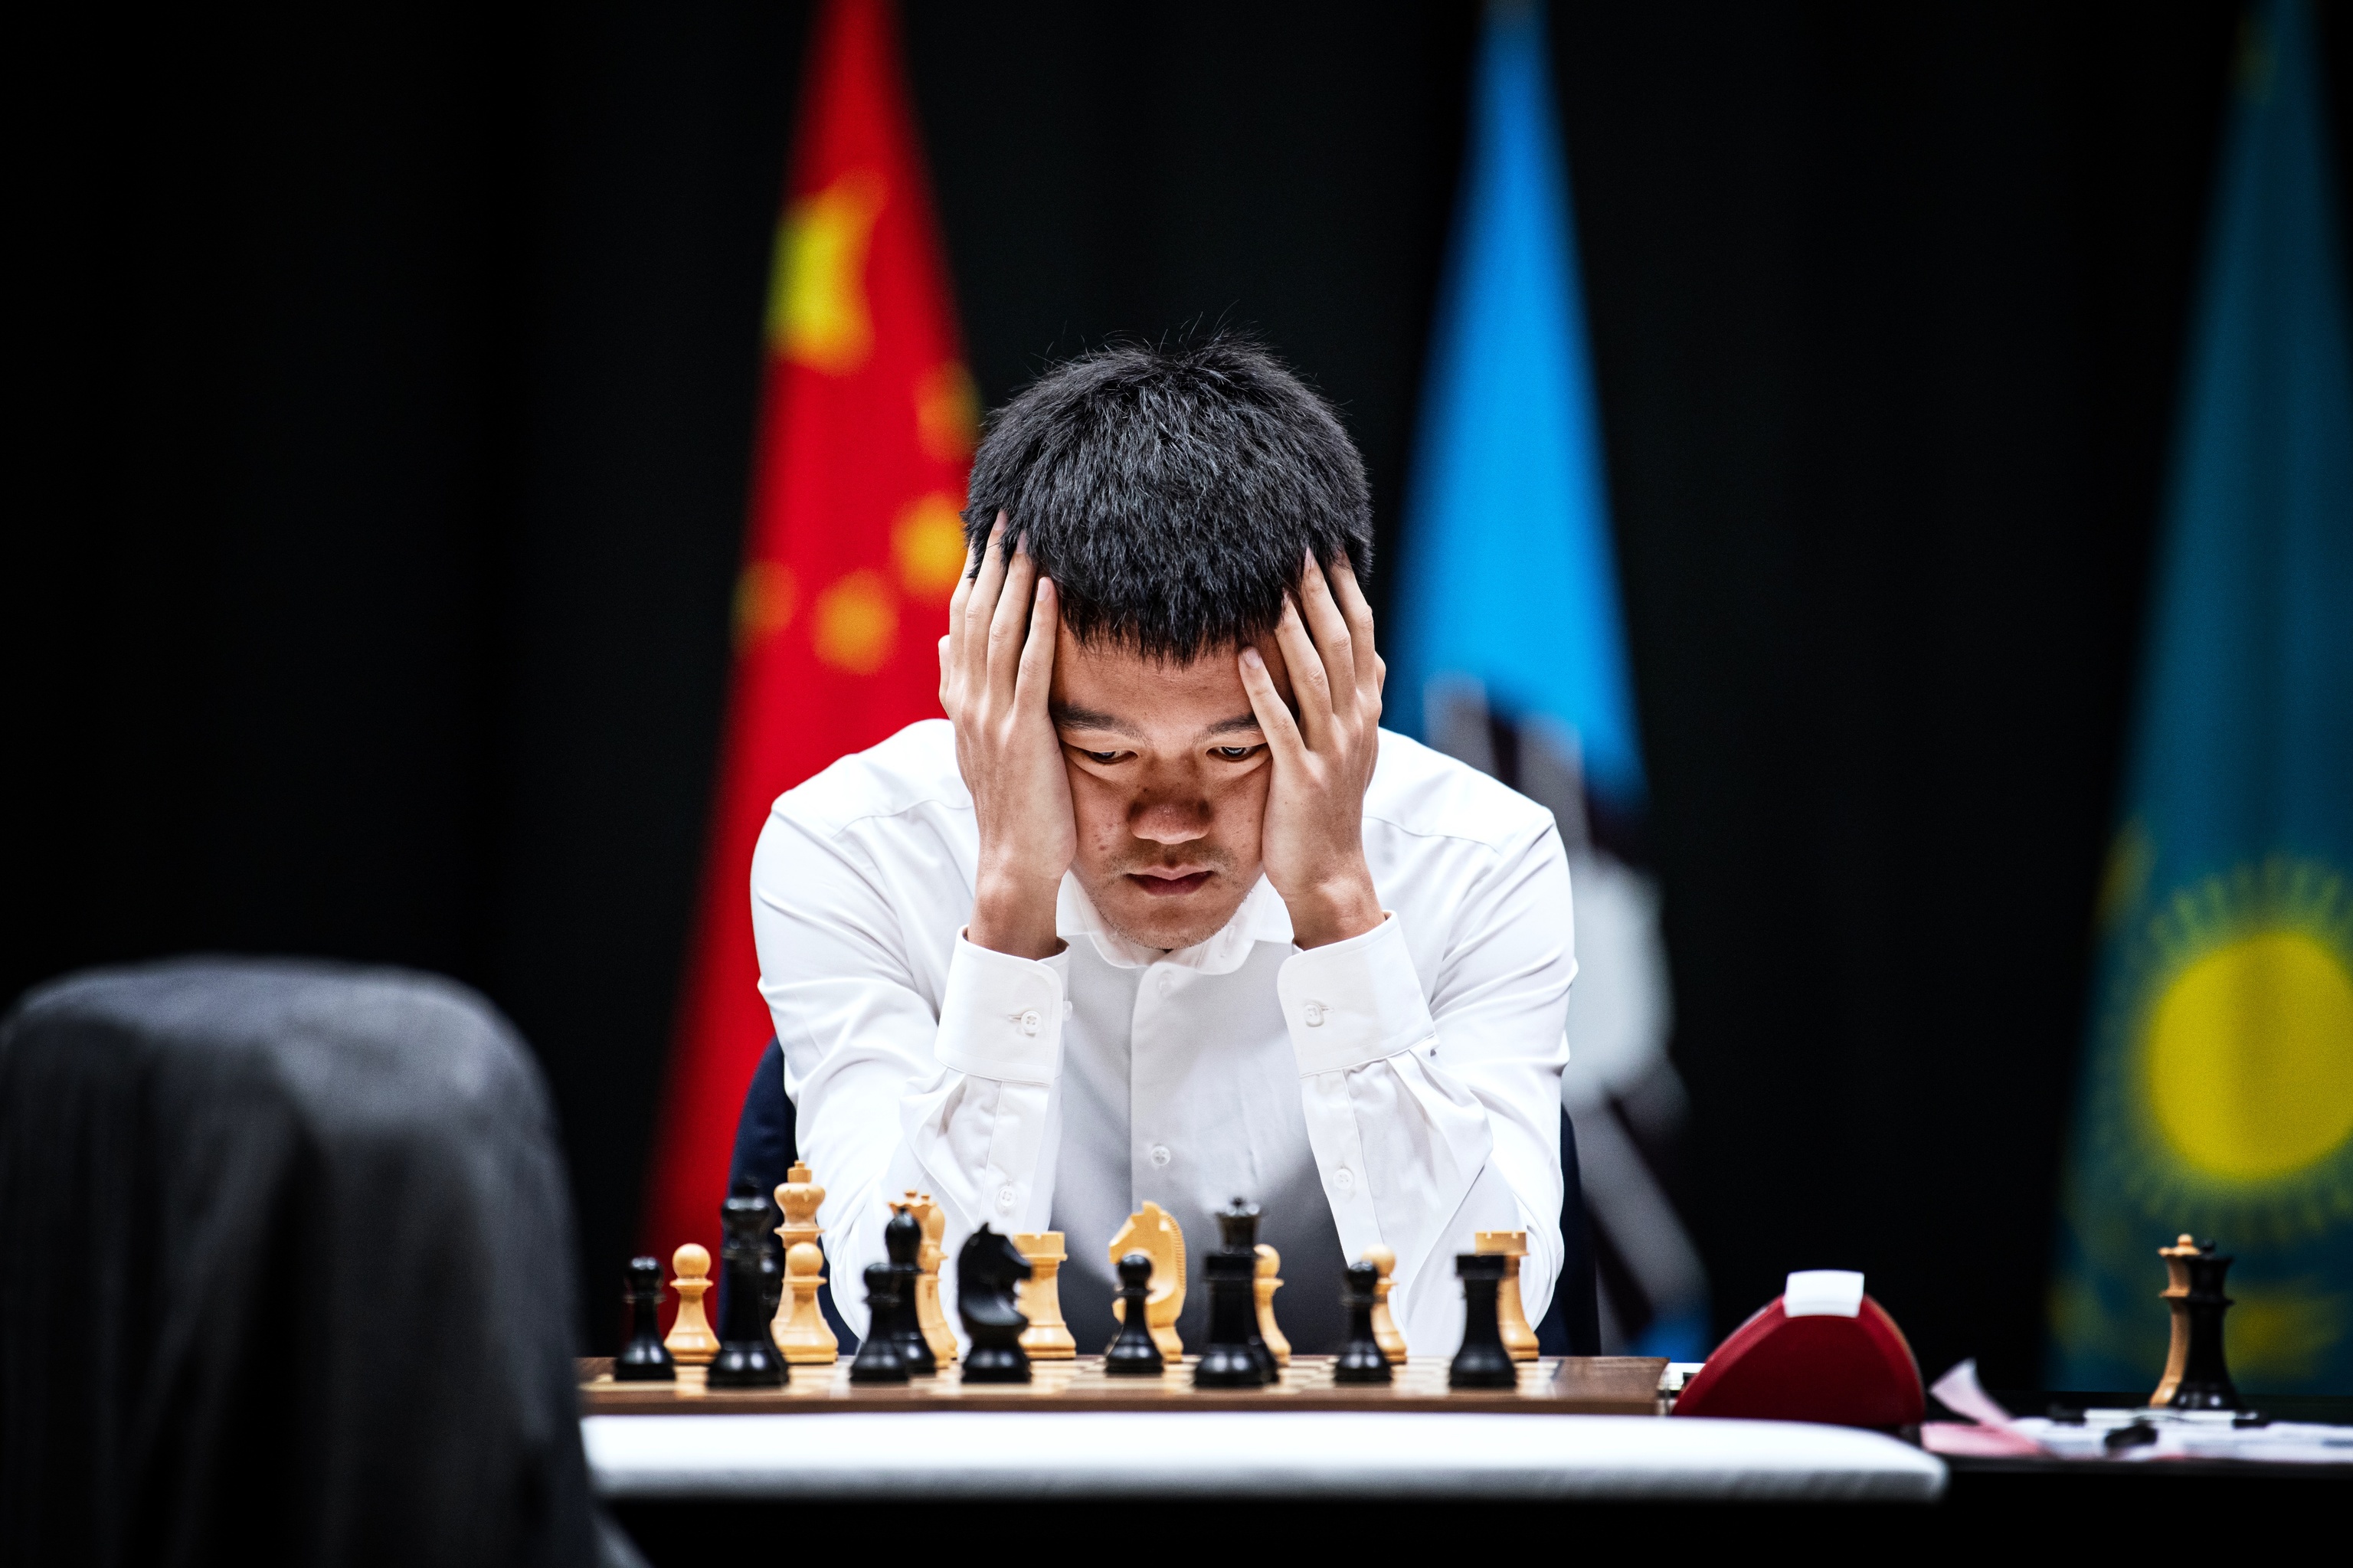 Ding Liren mirando el tablero durante la sexta partida contra Nepo.